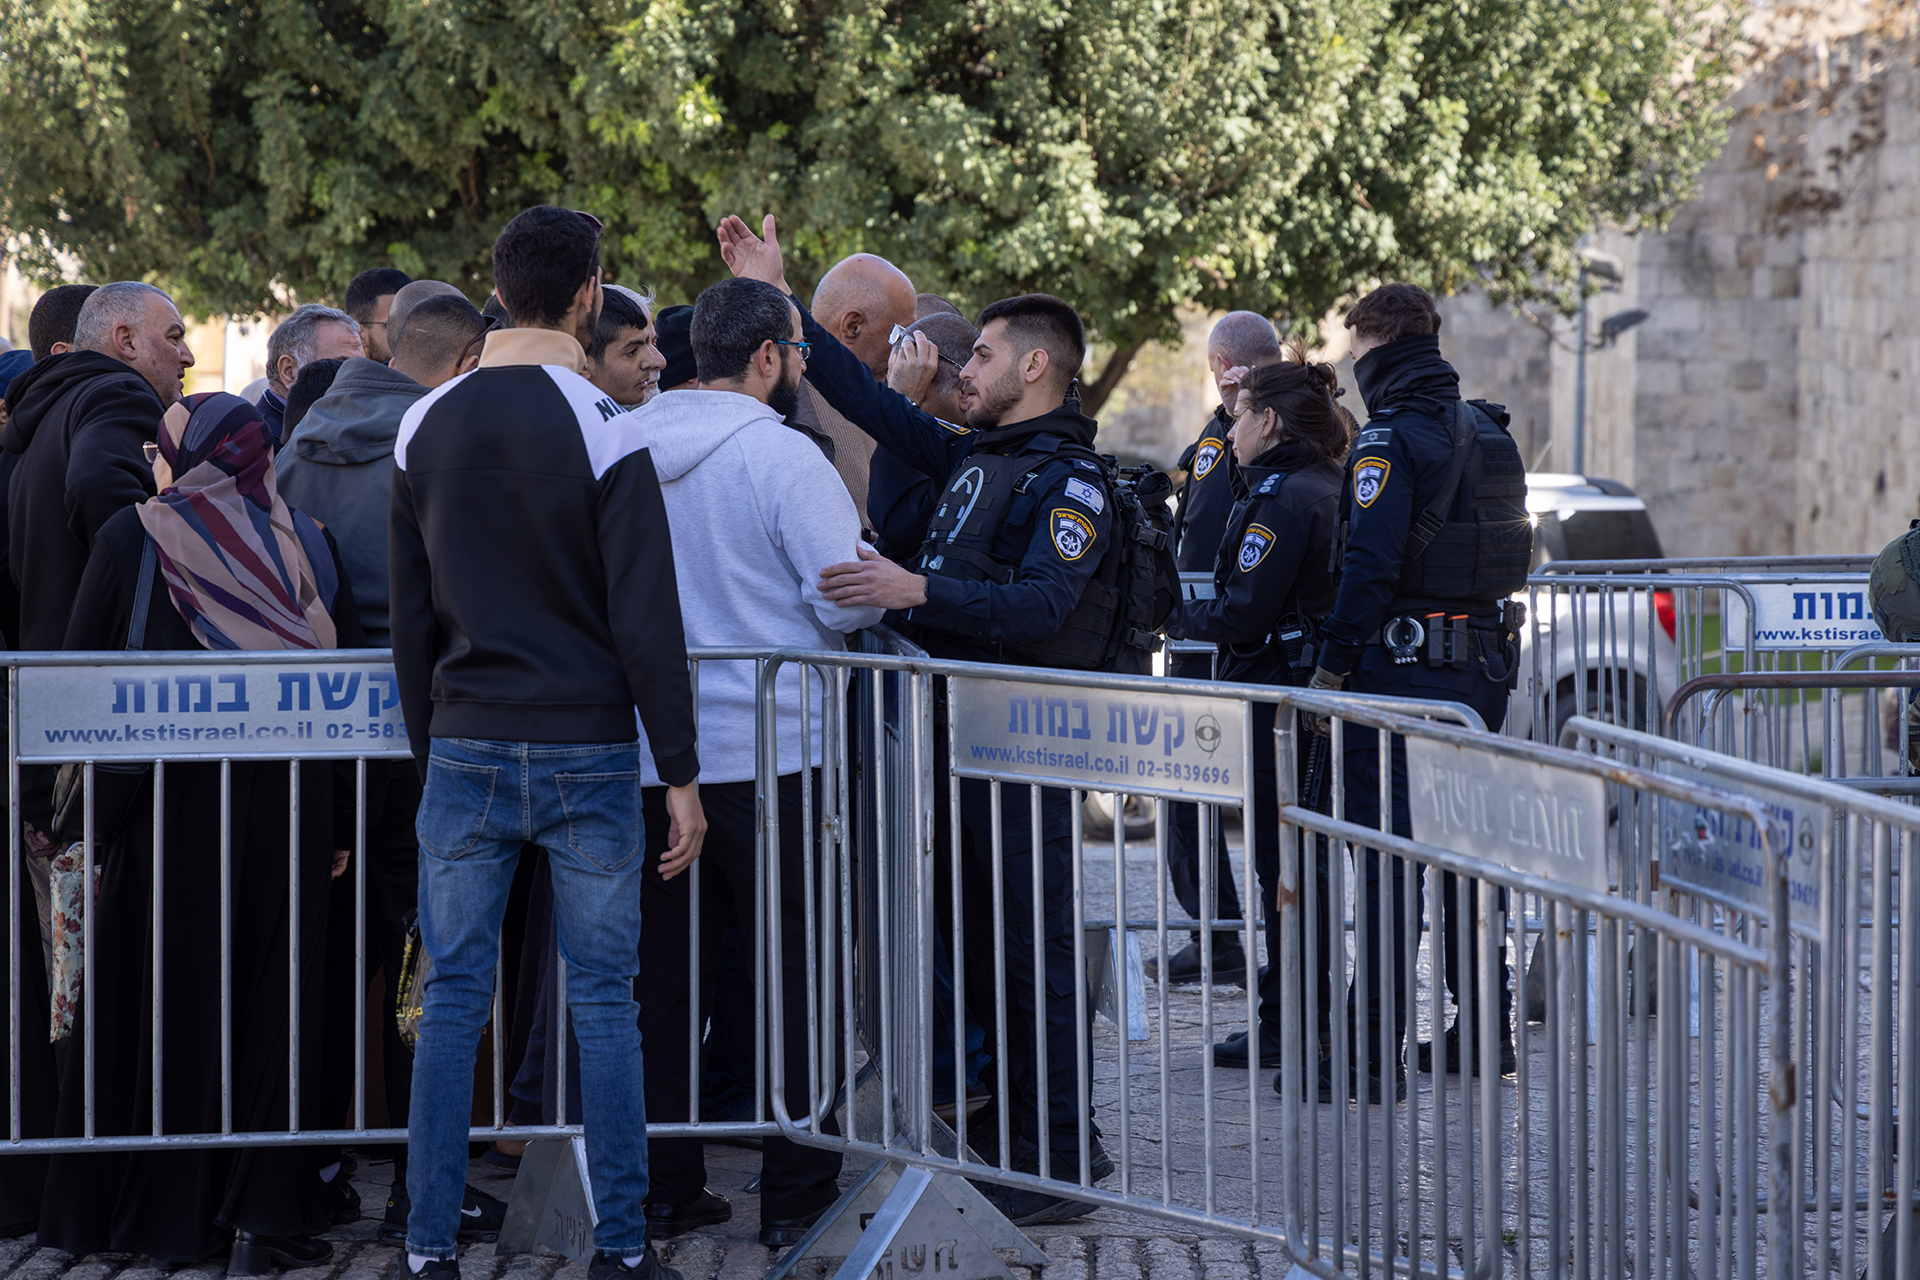 الاحتلال يضع سواتر حديدية بمحيط المسجد الأقصى | أخبار القدس – البوكس نيوز